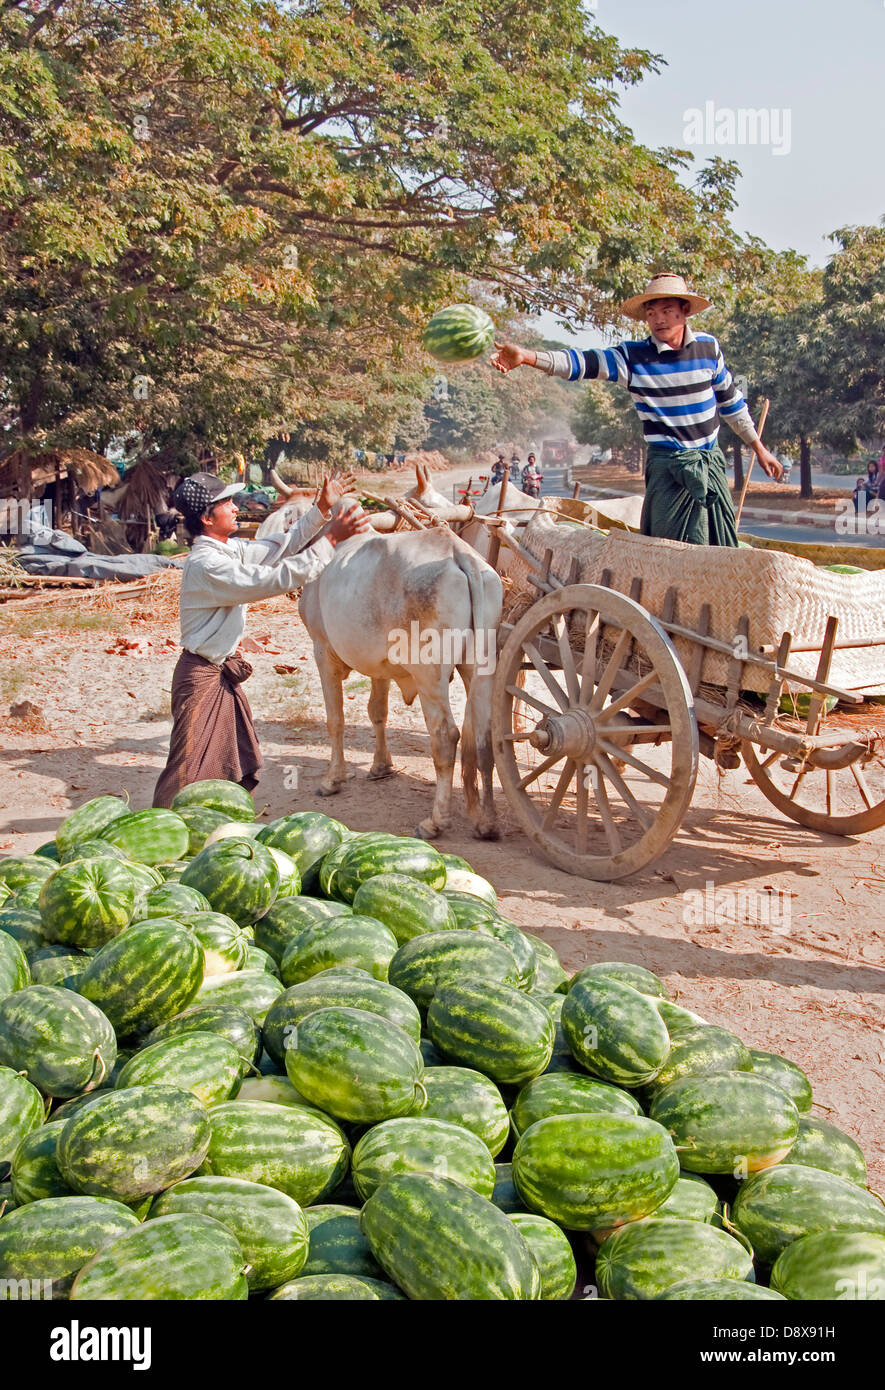 Landwirt entladen Wassermelonen von Ochsenkarren am Straßenrand in der Nähe von Mandalay. Stockfoto